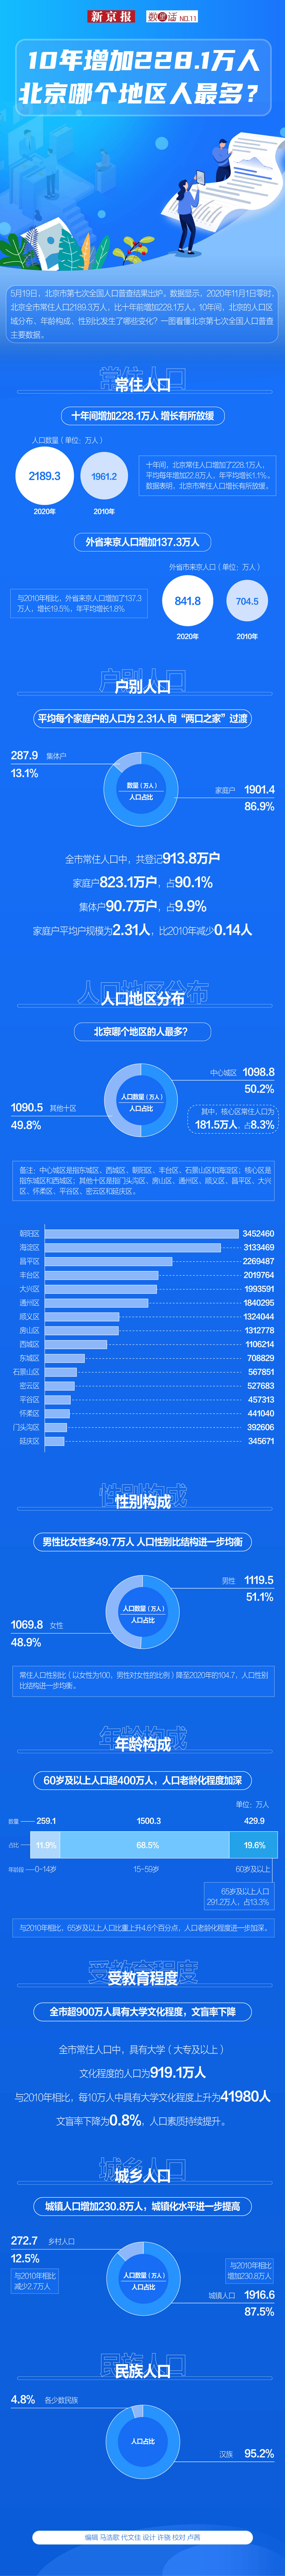 10年增加228.1万人 北京哪个地区人最多？